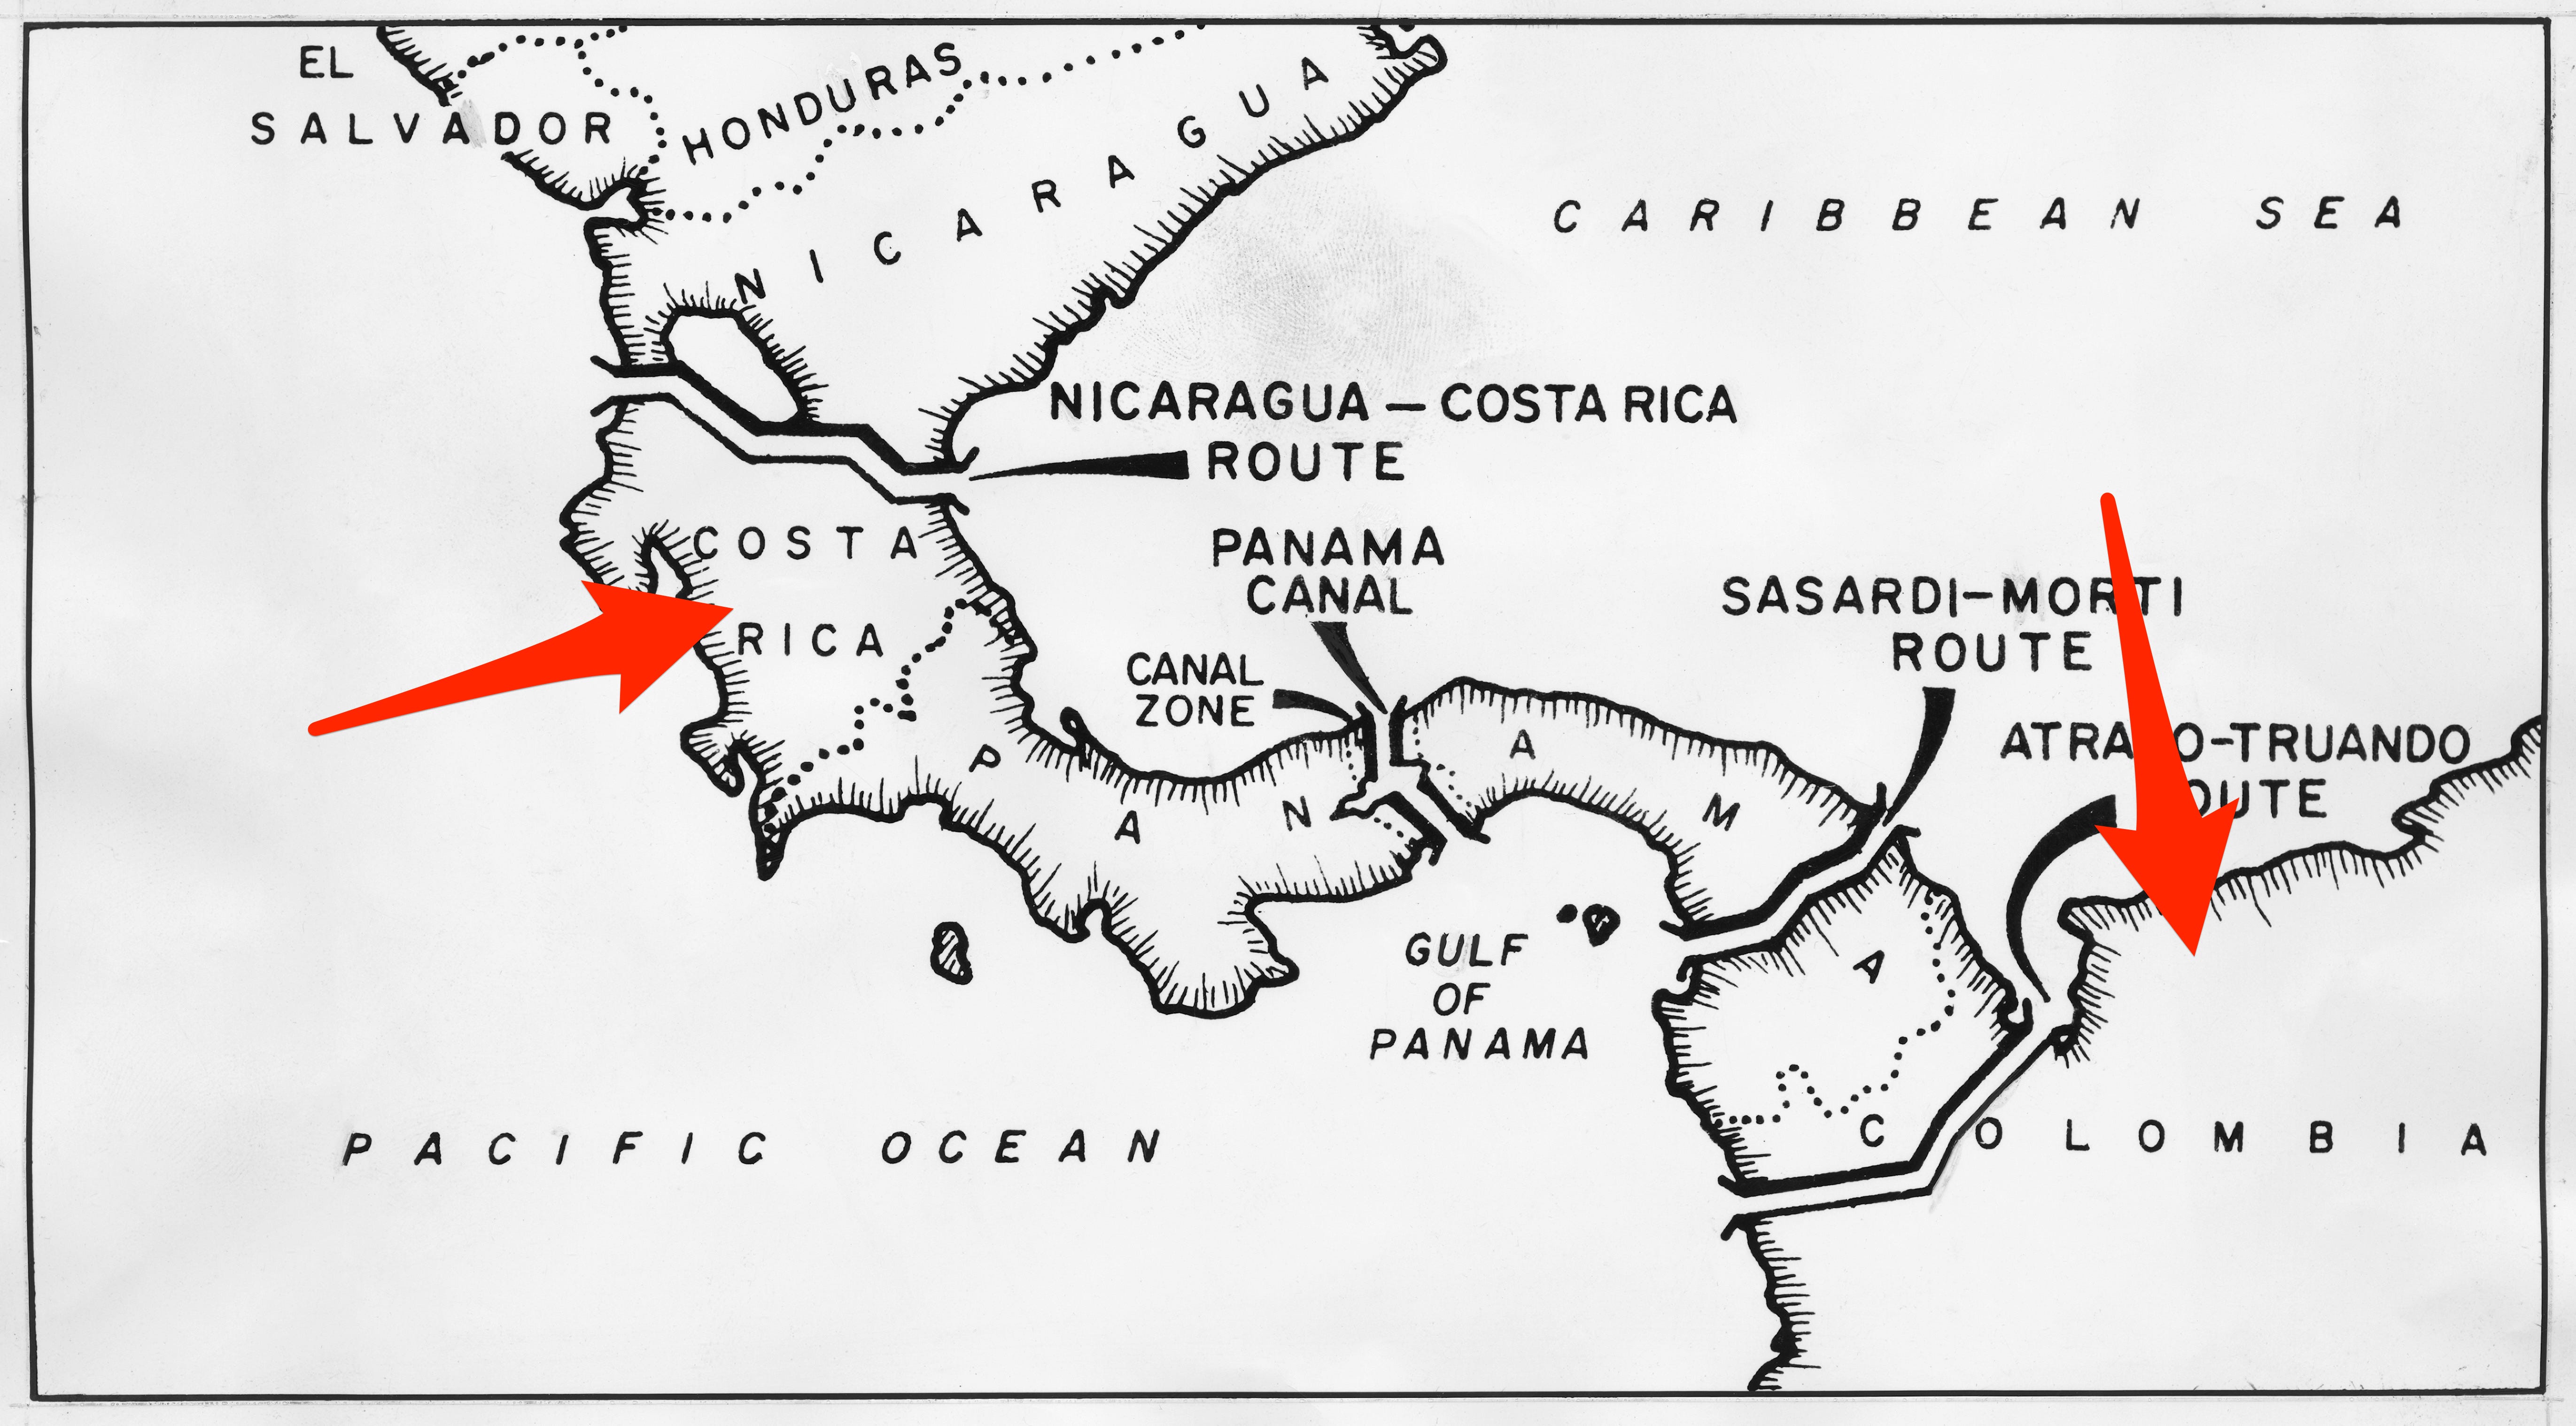 Eine Karte von Mittelamerika mit Pfeilen, die auf Costa Rica und Kolumbien zeigen, wo ein zweiter chinesischer Überwachungsballon gesichtet wurde.